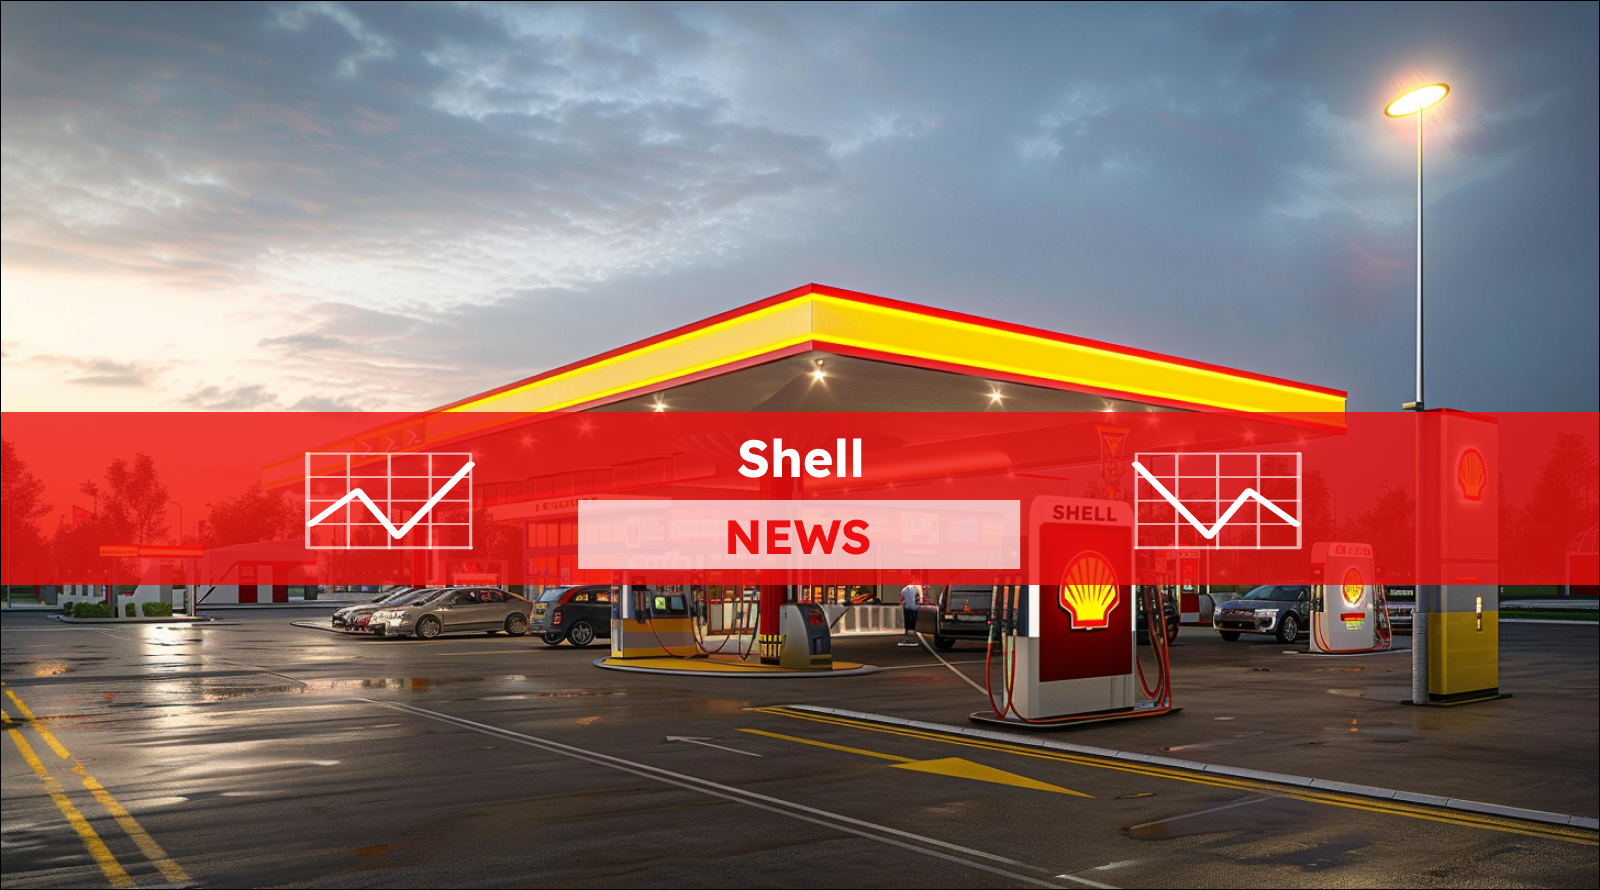 Elektrotankstelle mit Shell-Logo, mit einem Shell NEWS Banner.